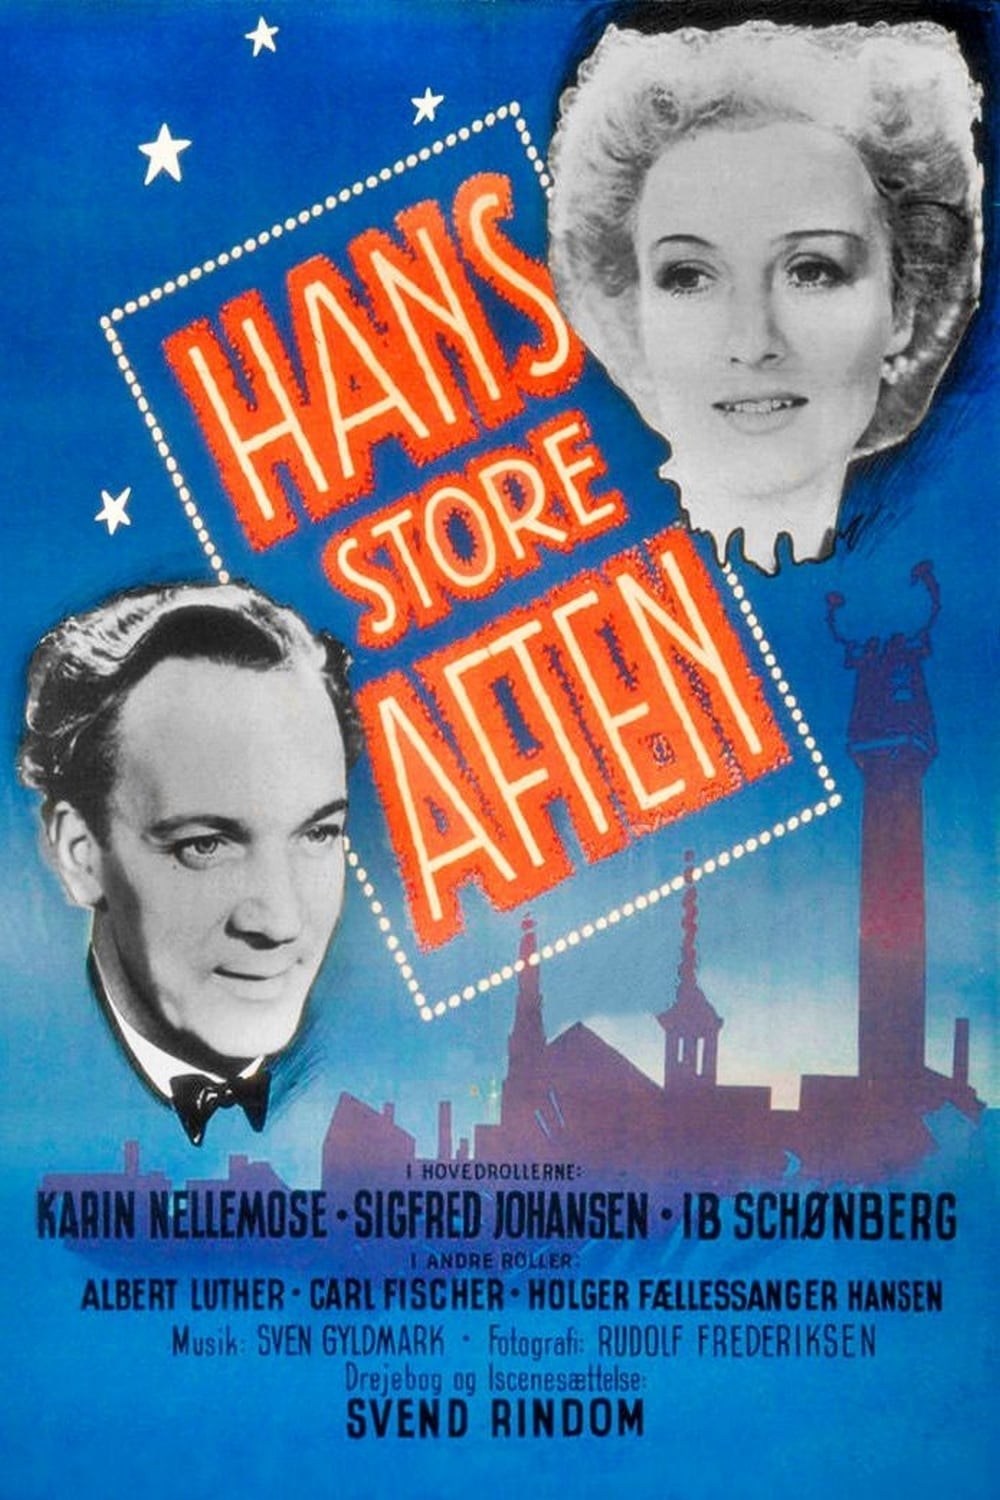 Hans Store Aften (1946)